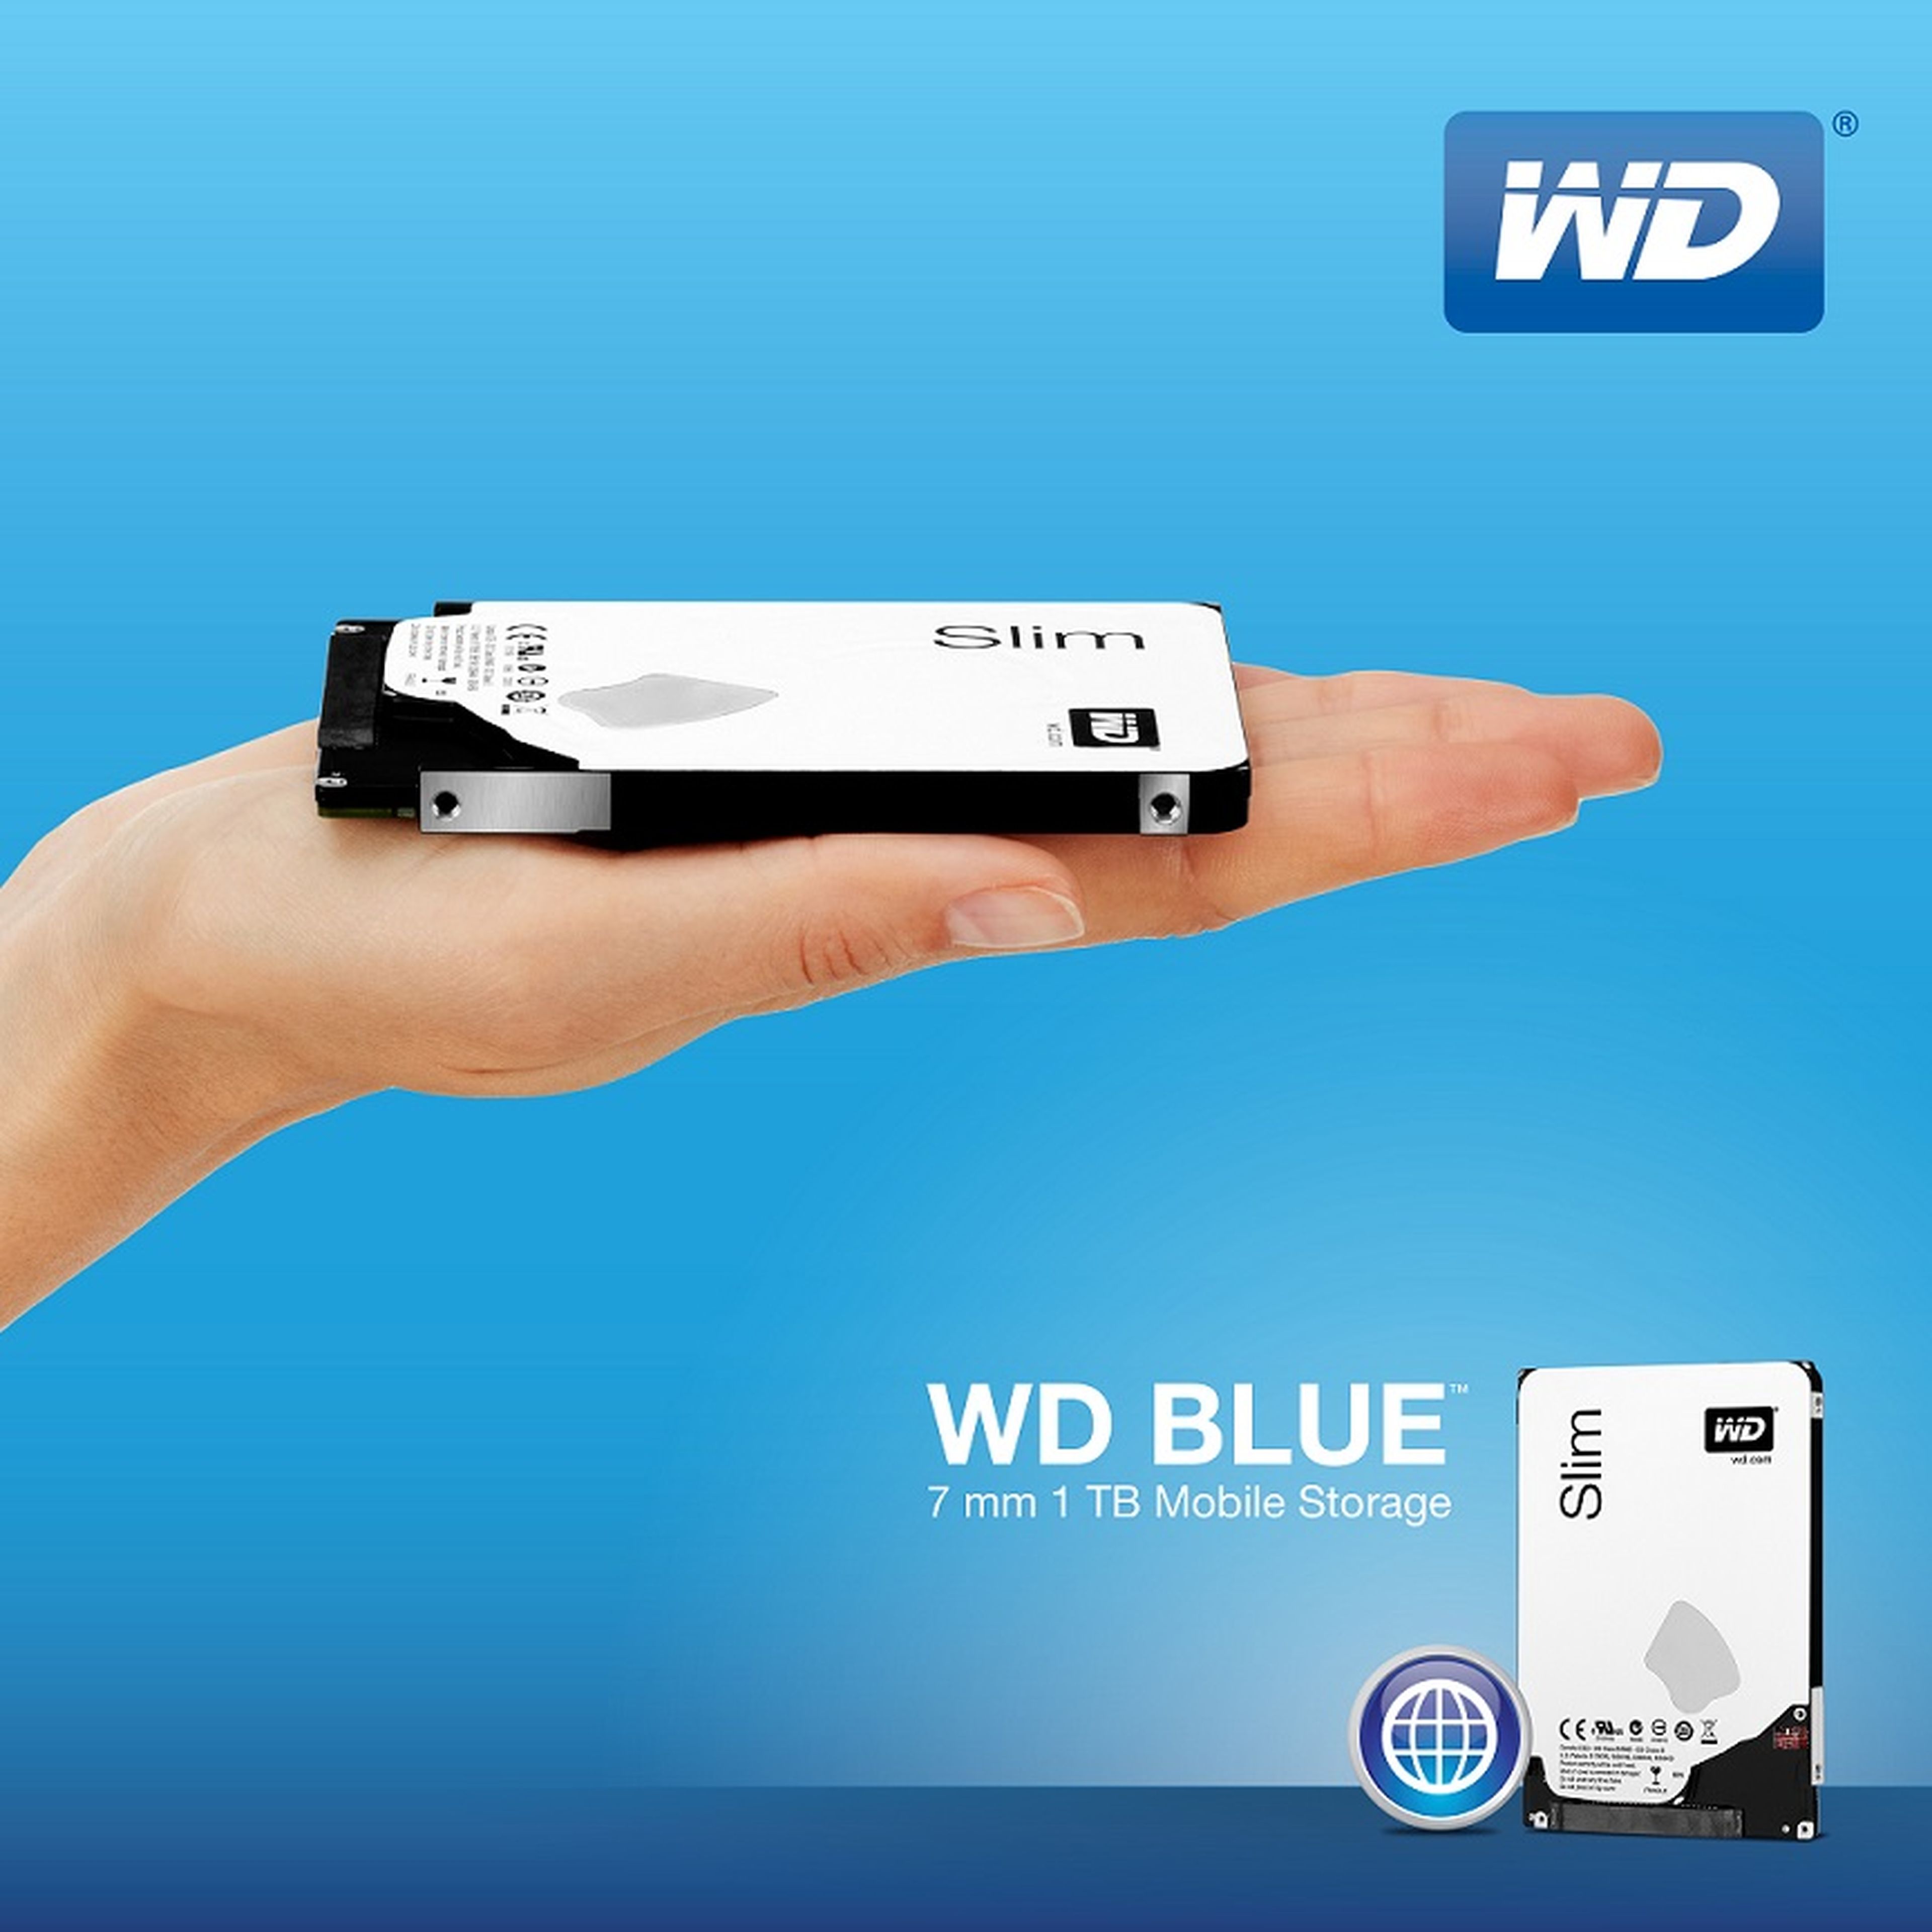 WD Blue, el disco duro más fino